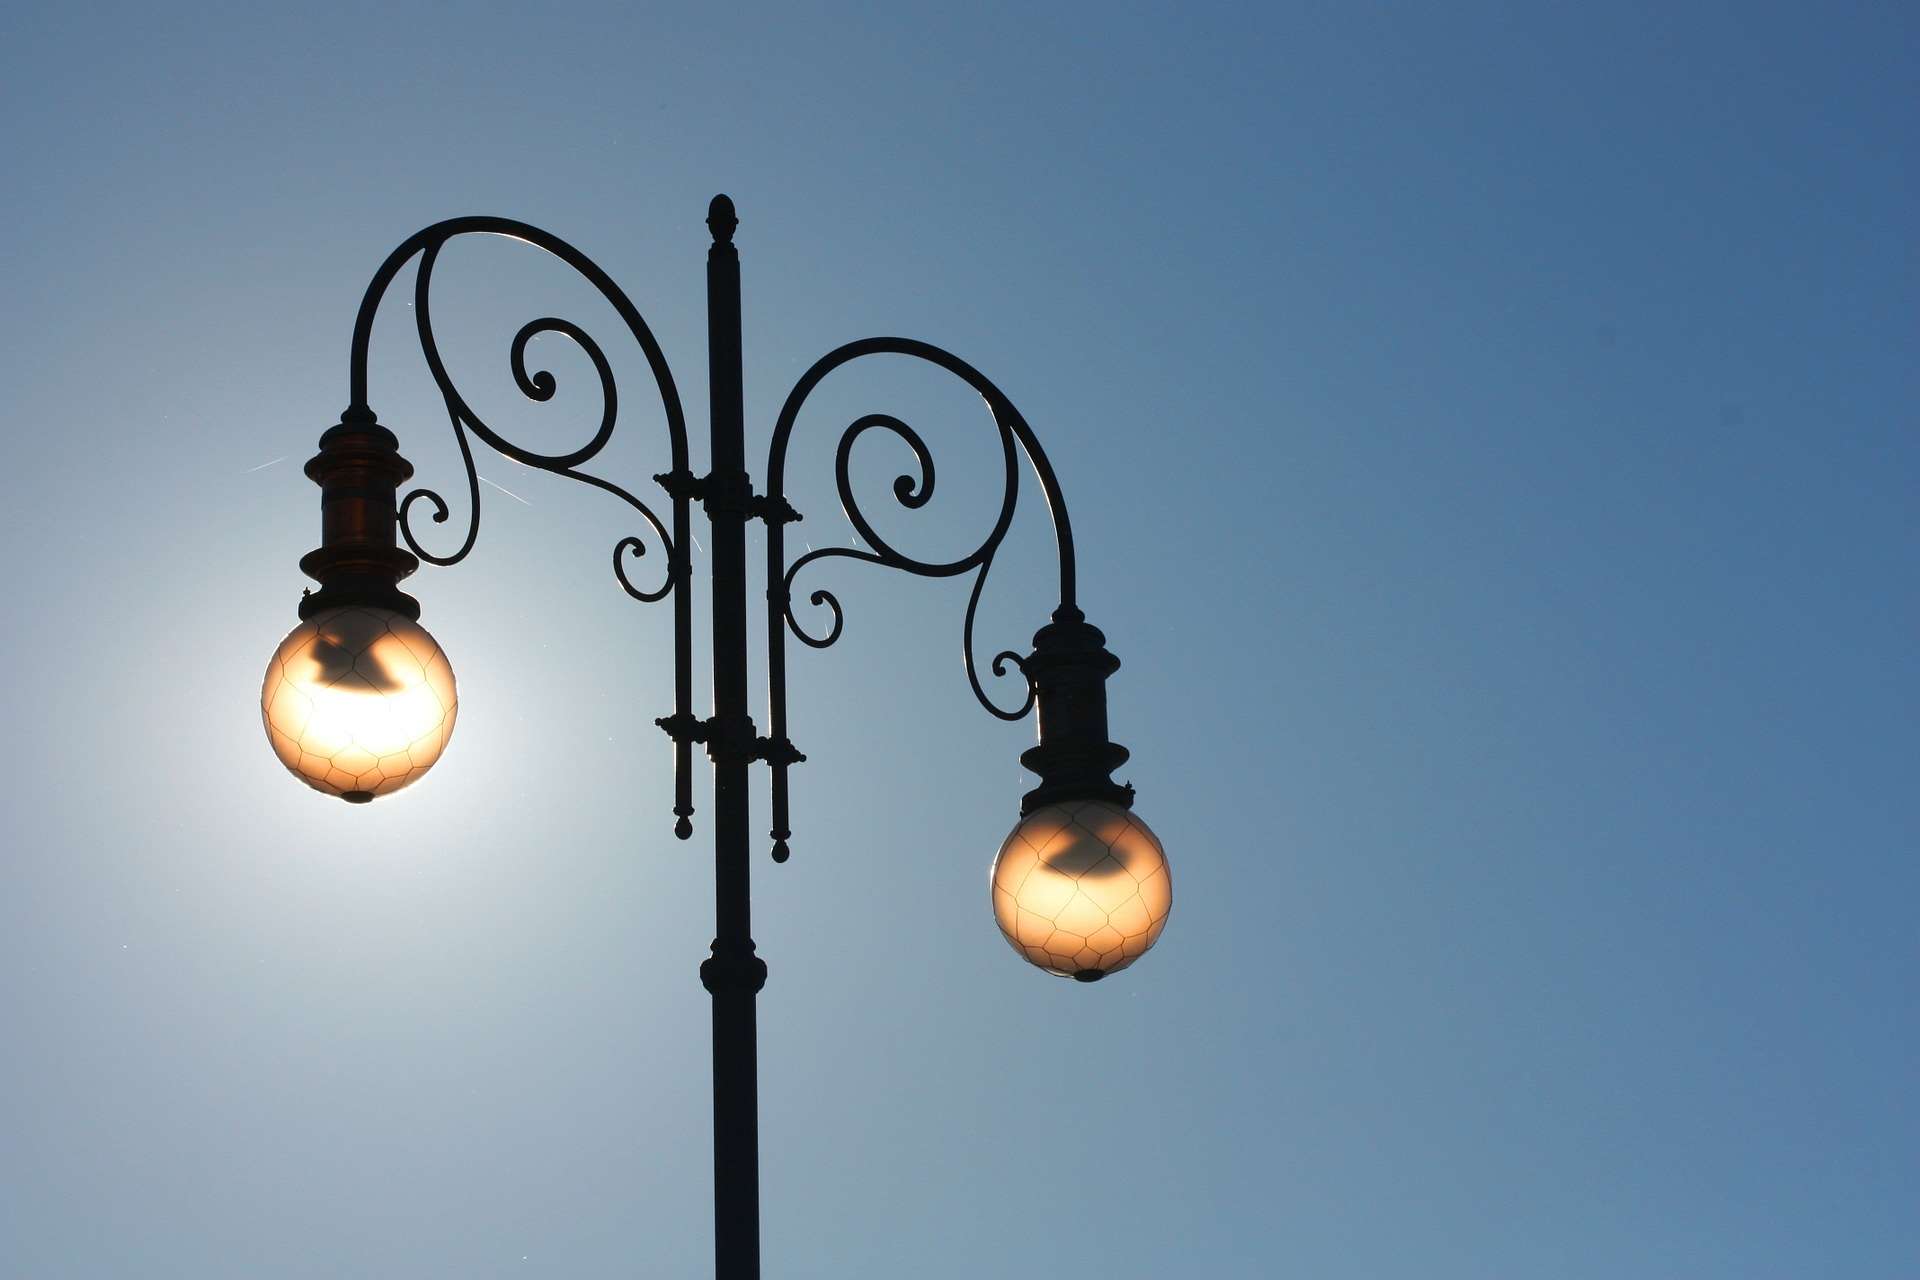 L’Unione Madonie avvia l’efficientamento energetico degli impianti di illuminazione pubblica in alcuni comuni